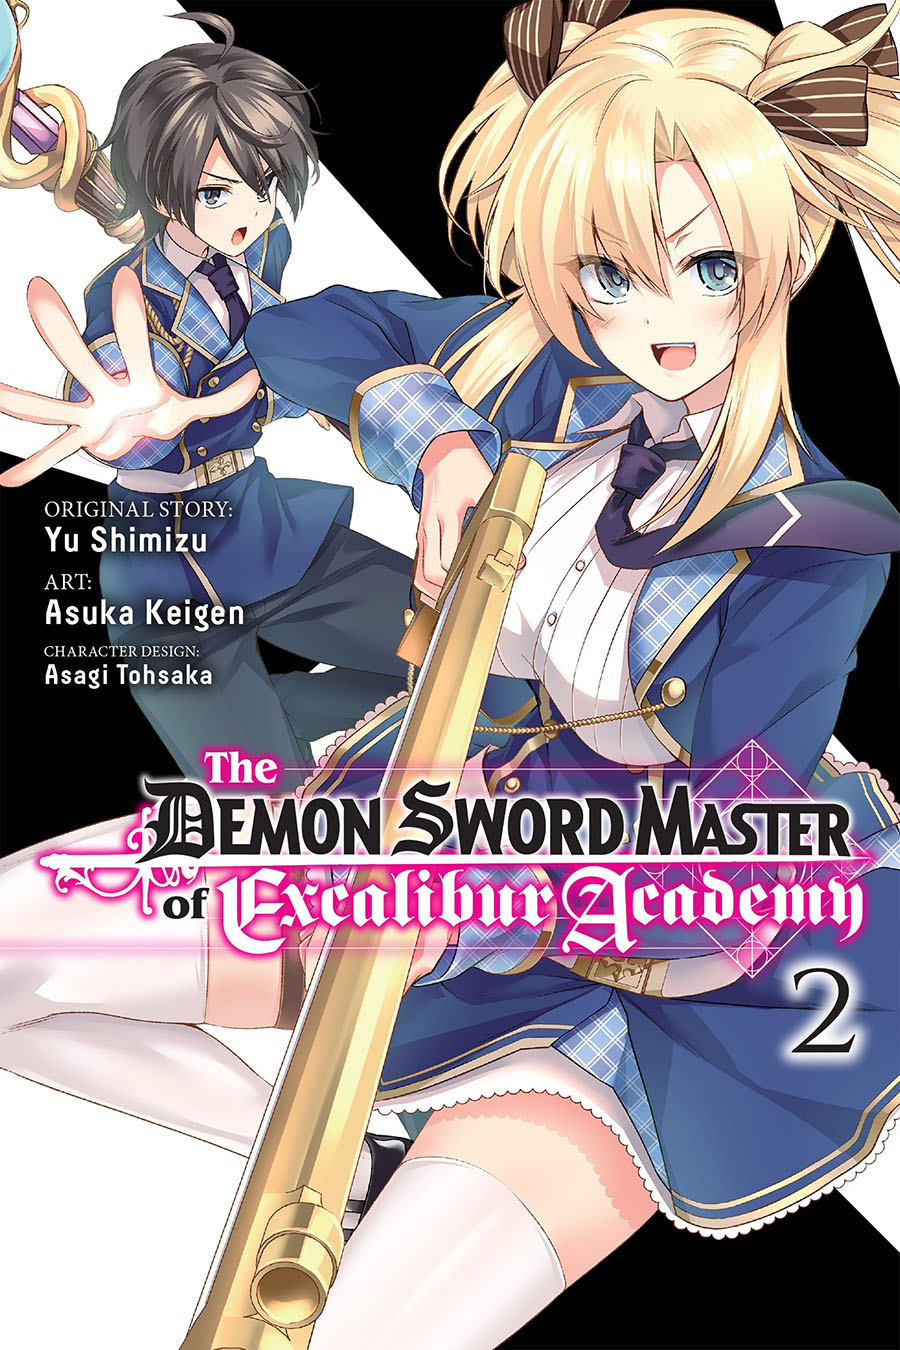 Demon Sword Master Of Excalibur Academy Vol 2 GN